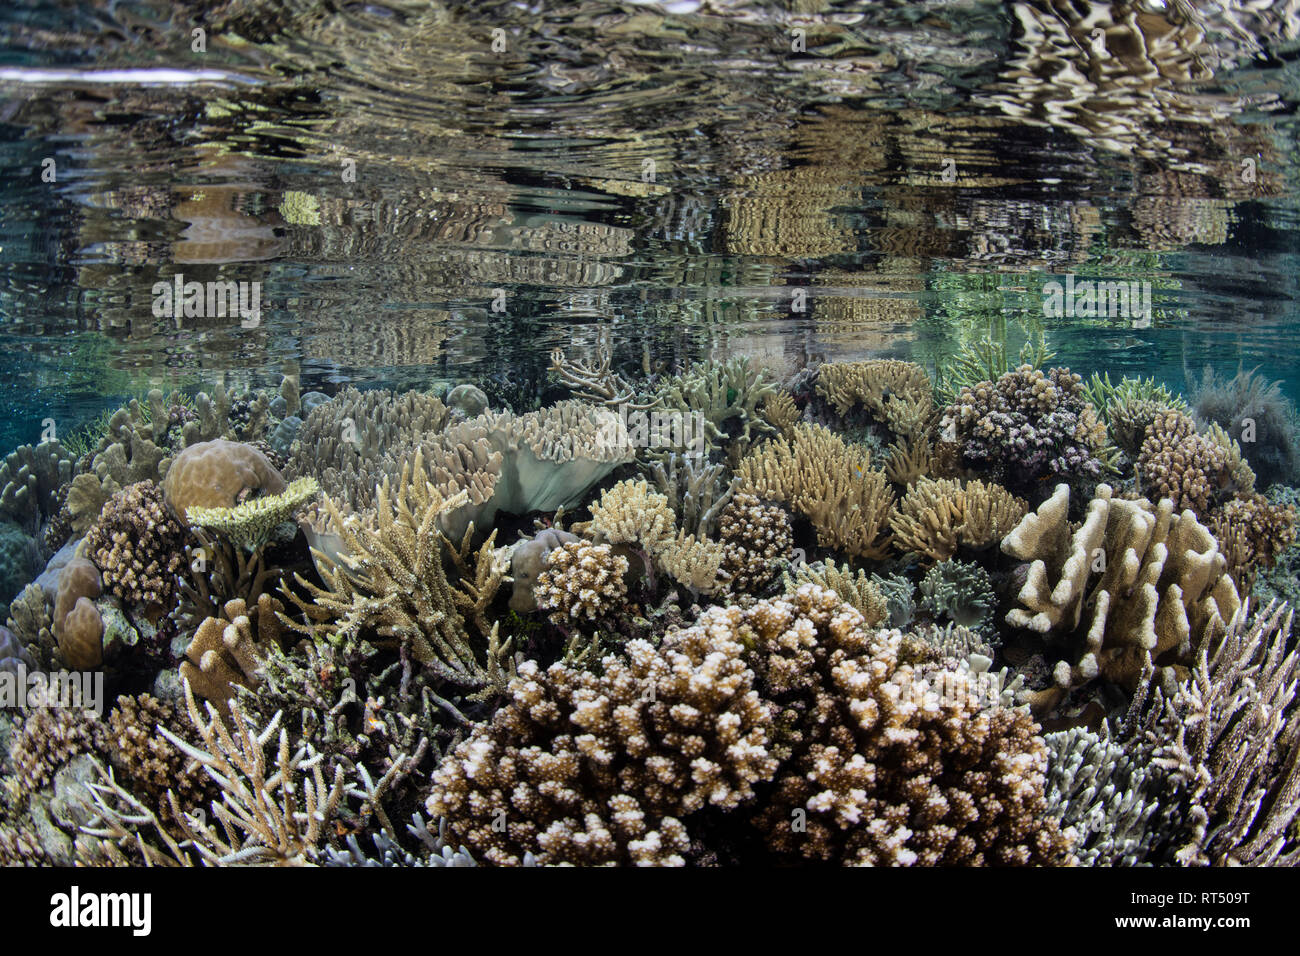 Un beau récif de corail se développe parmi les îles tropicales de Raja Ampat, en Indonésie. Banque D'Images